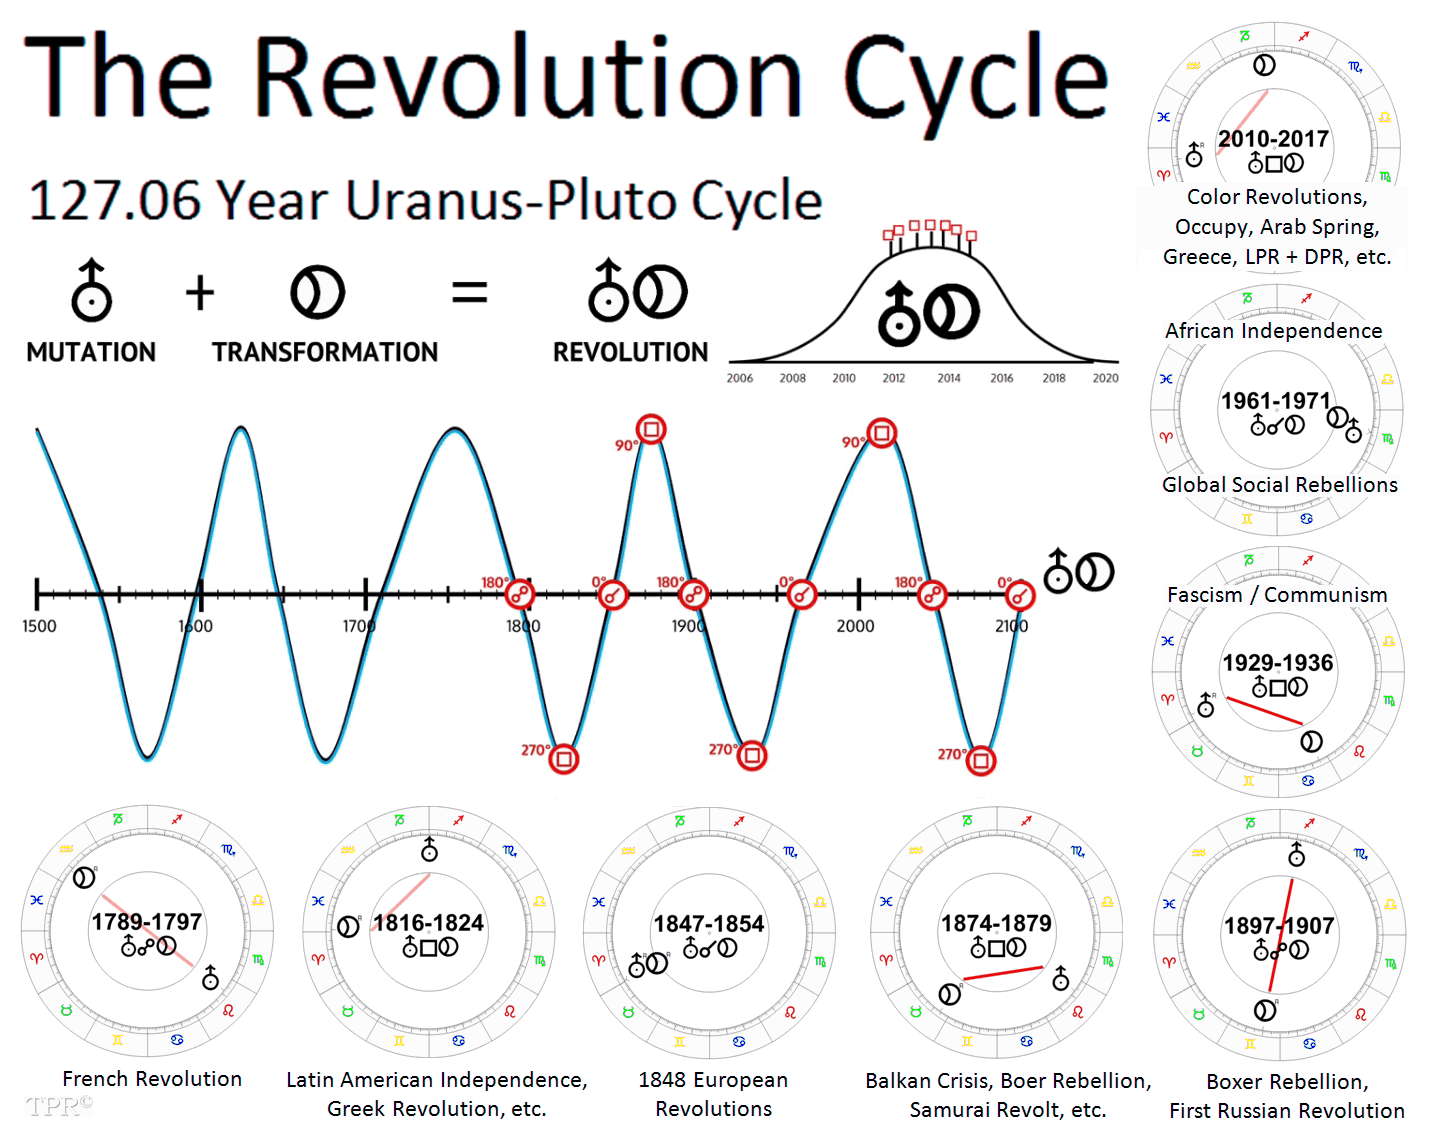 What is Uranus' period of revolution?